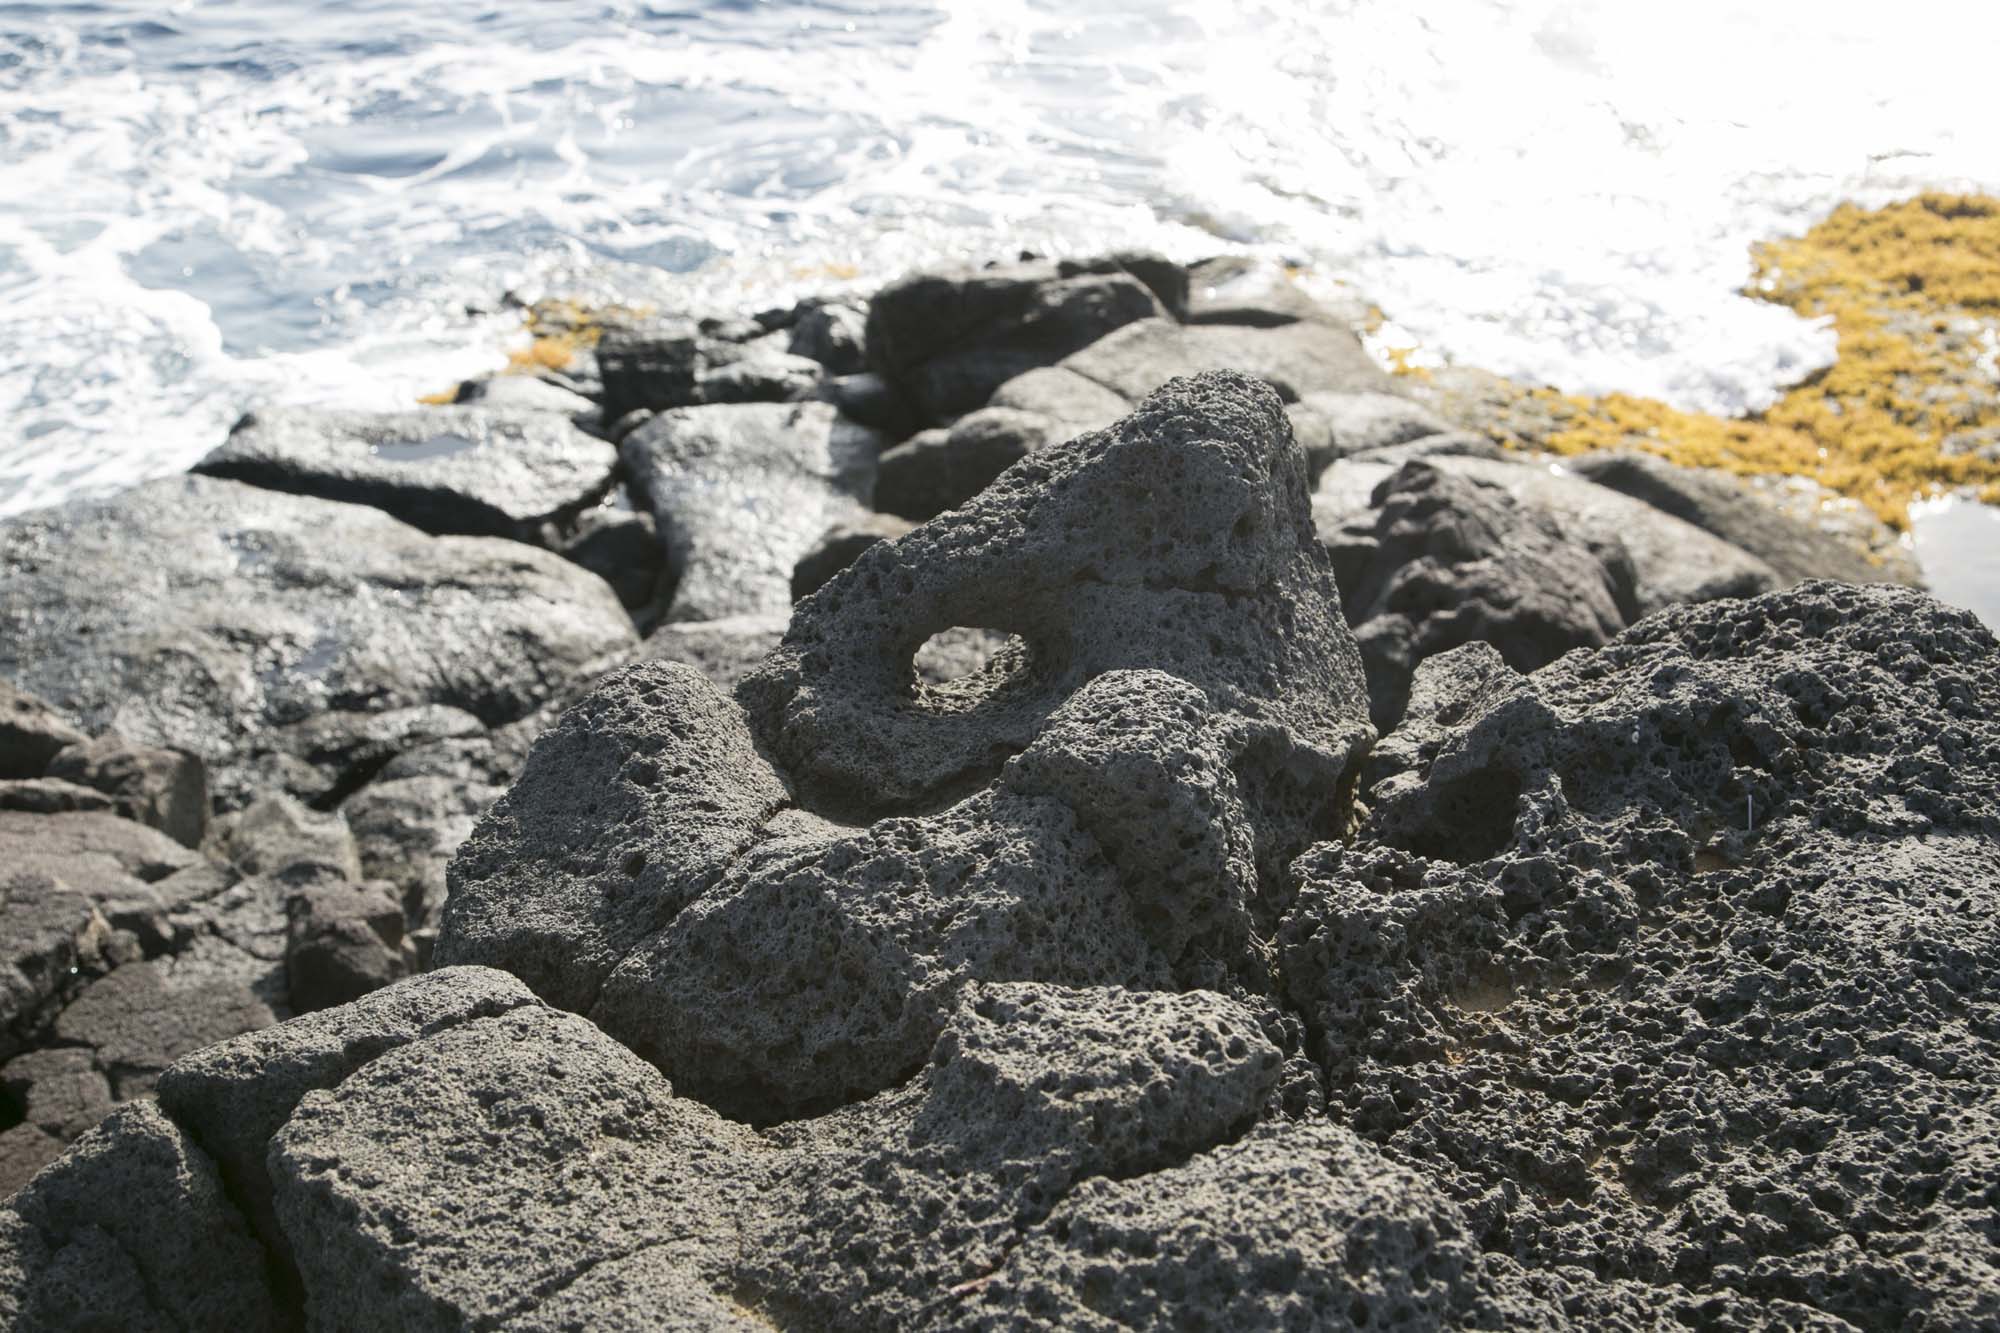 岩に刻まれた穴は、タヒチからハワイへ渡ってきた人たちがカヌーをつないだ跡といわれるカヌー・ホール。1000年以上も前の先住民族の痕跡が、今もそのまま残っています。